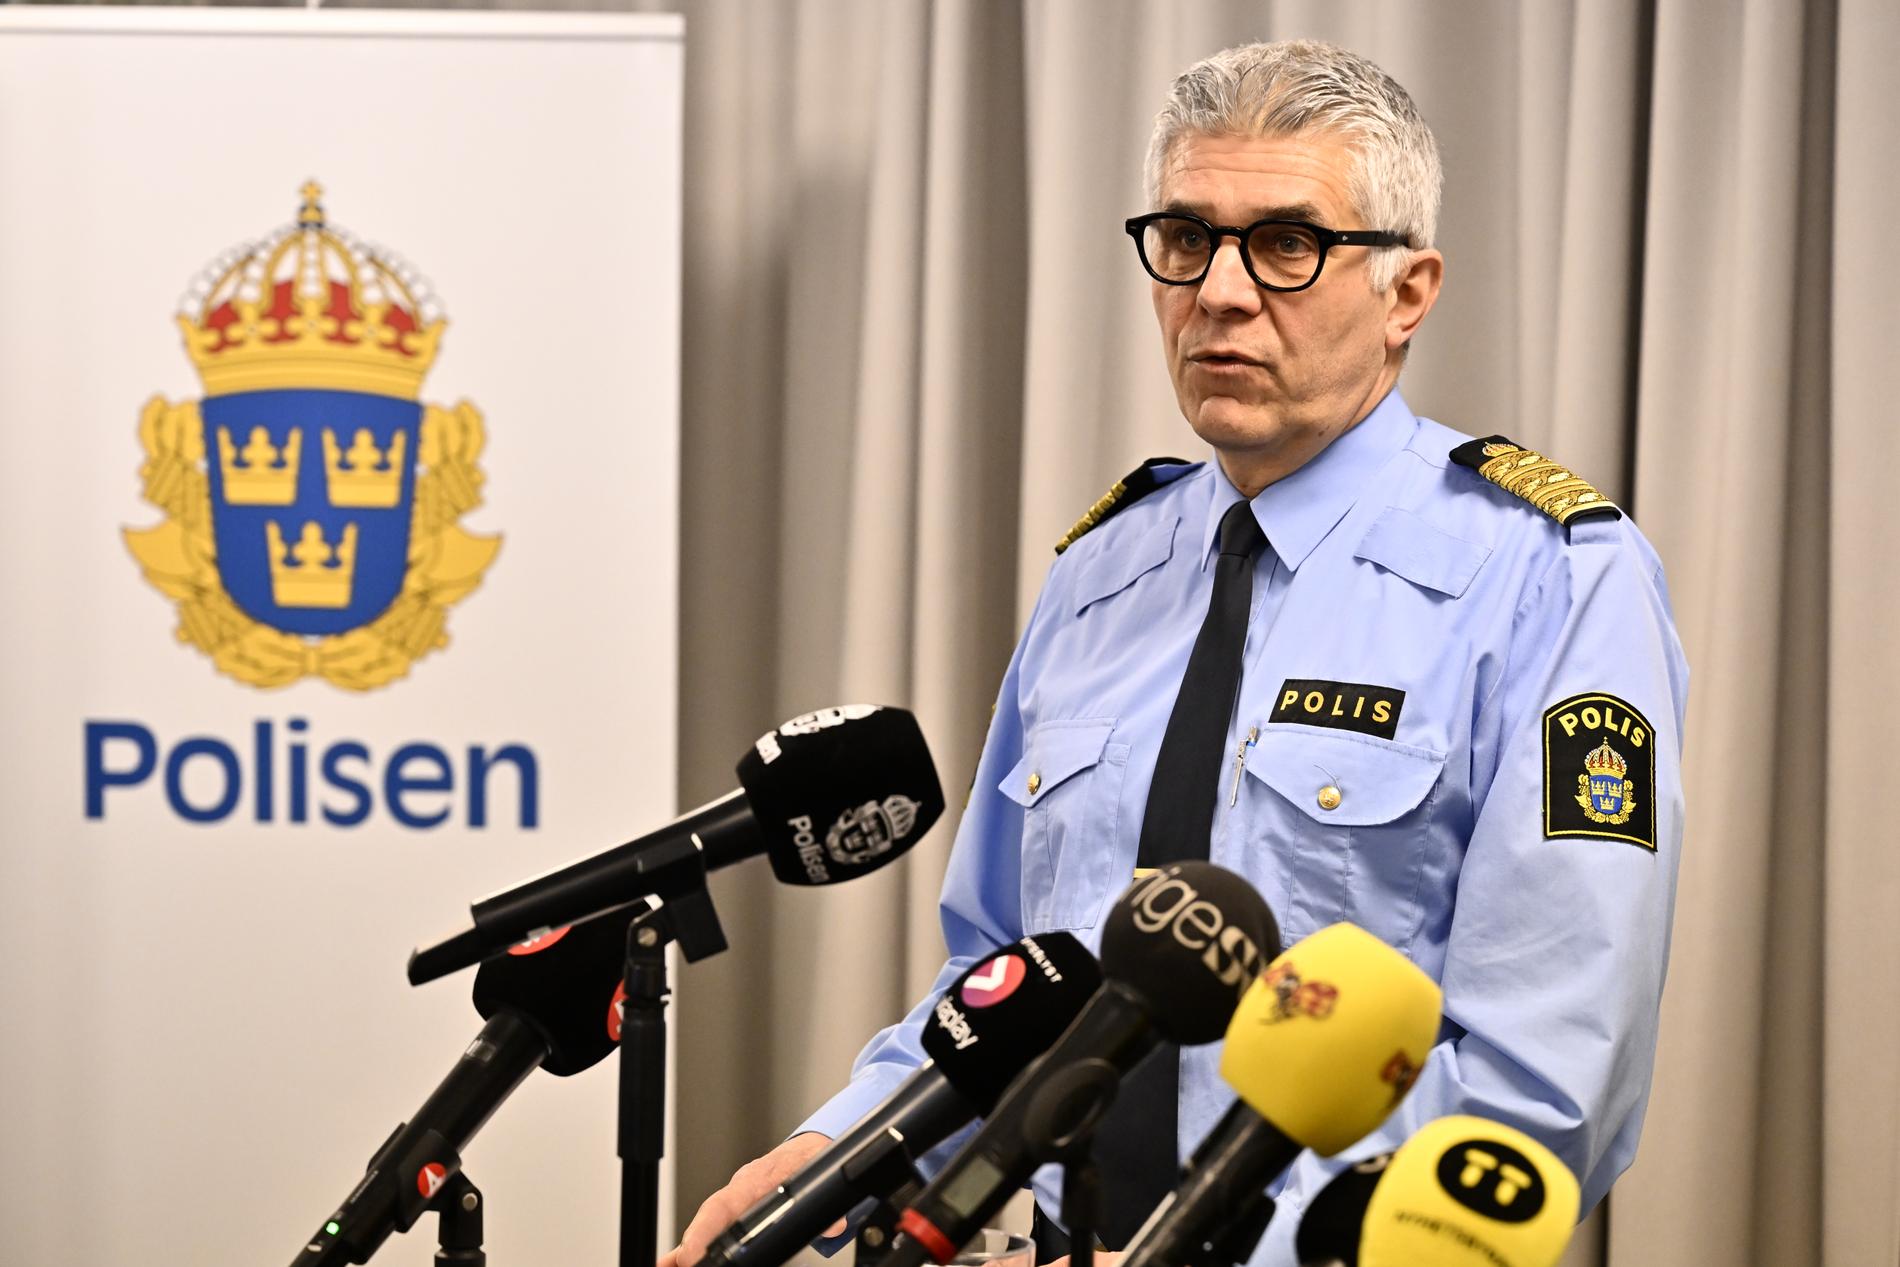 Rikspolischef Anders Thornberg under pressträff där han kommenterar rapporten ”Utredning om vissa förhållanden i samband med polisanmälningar mot polischef”